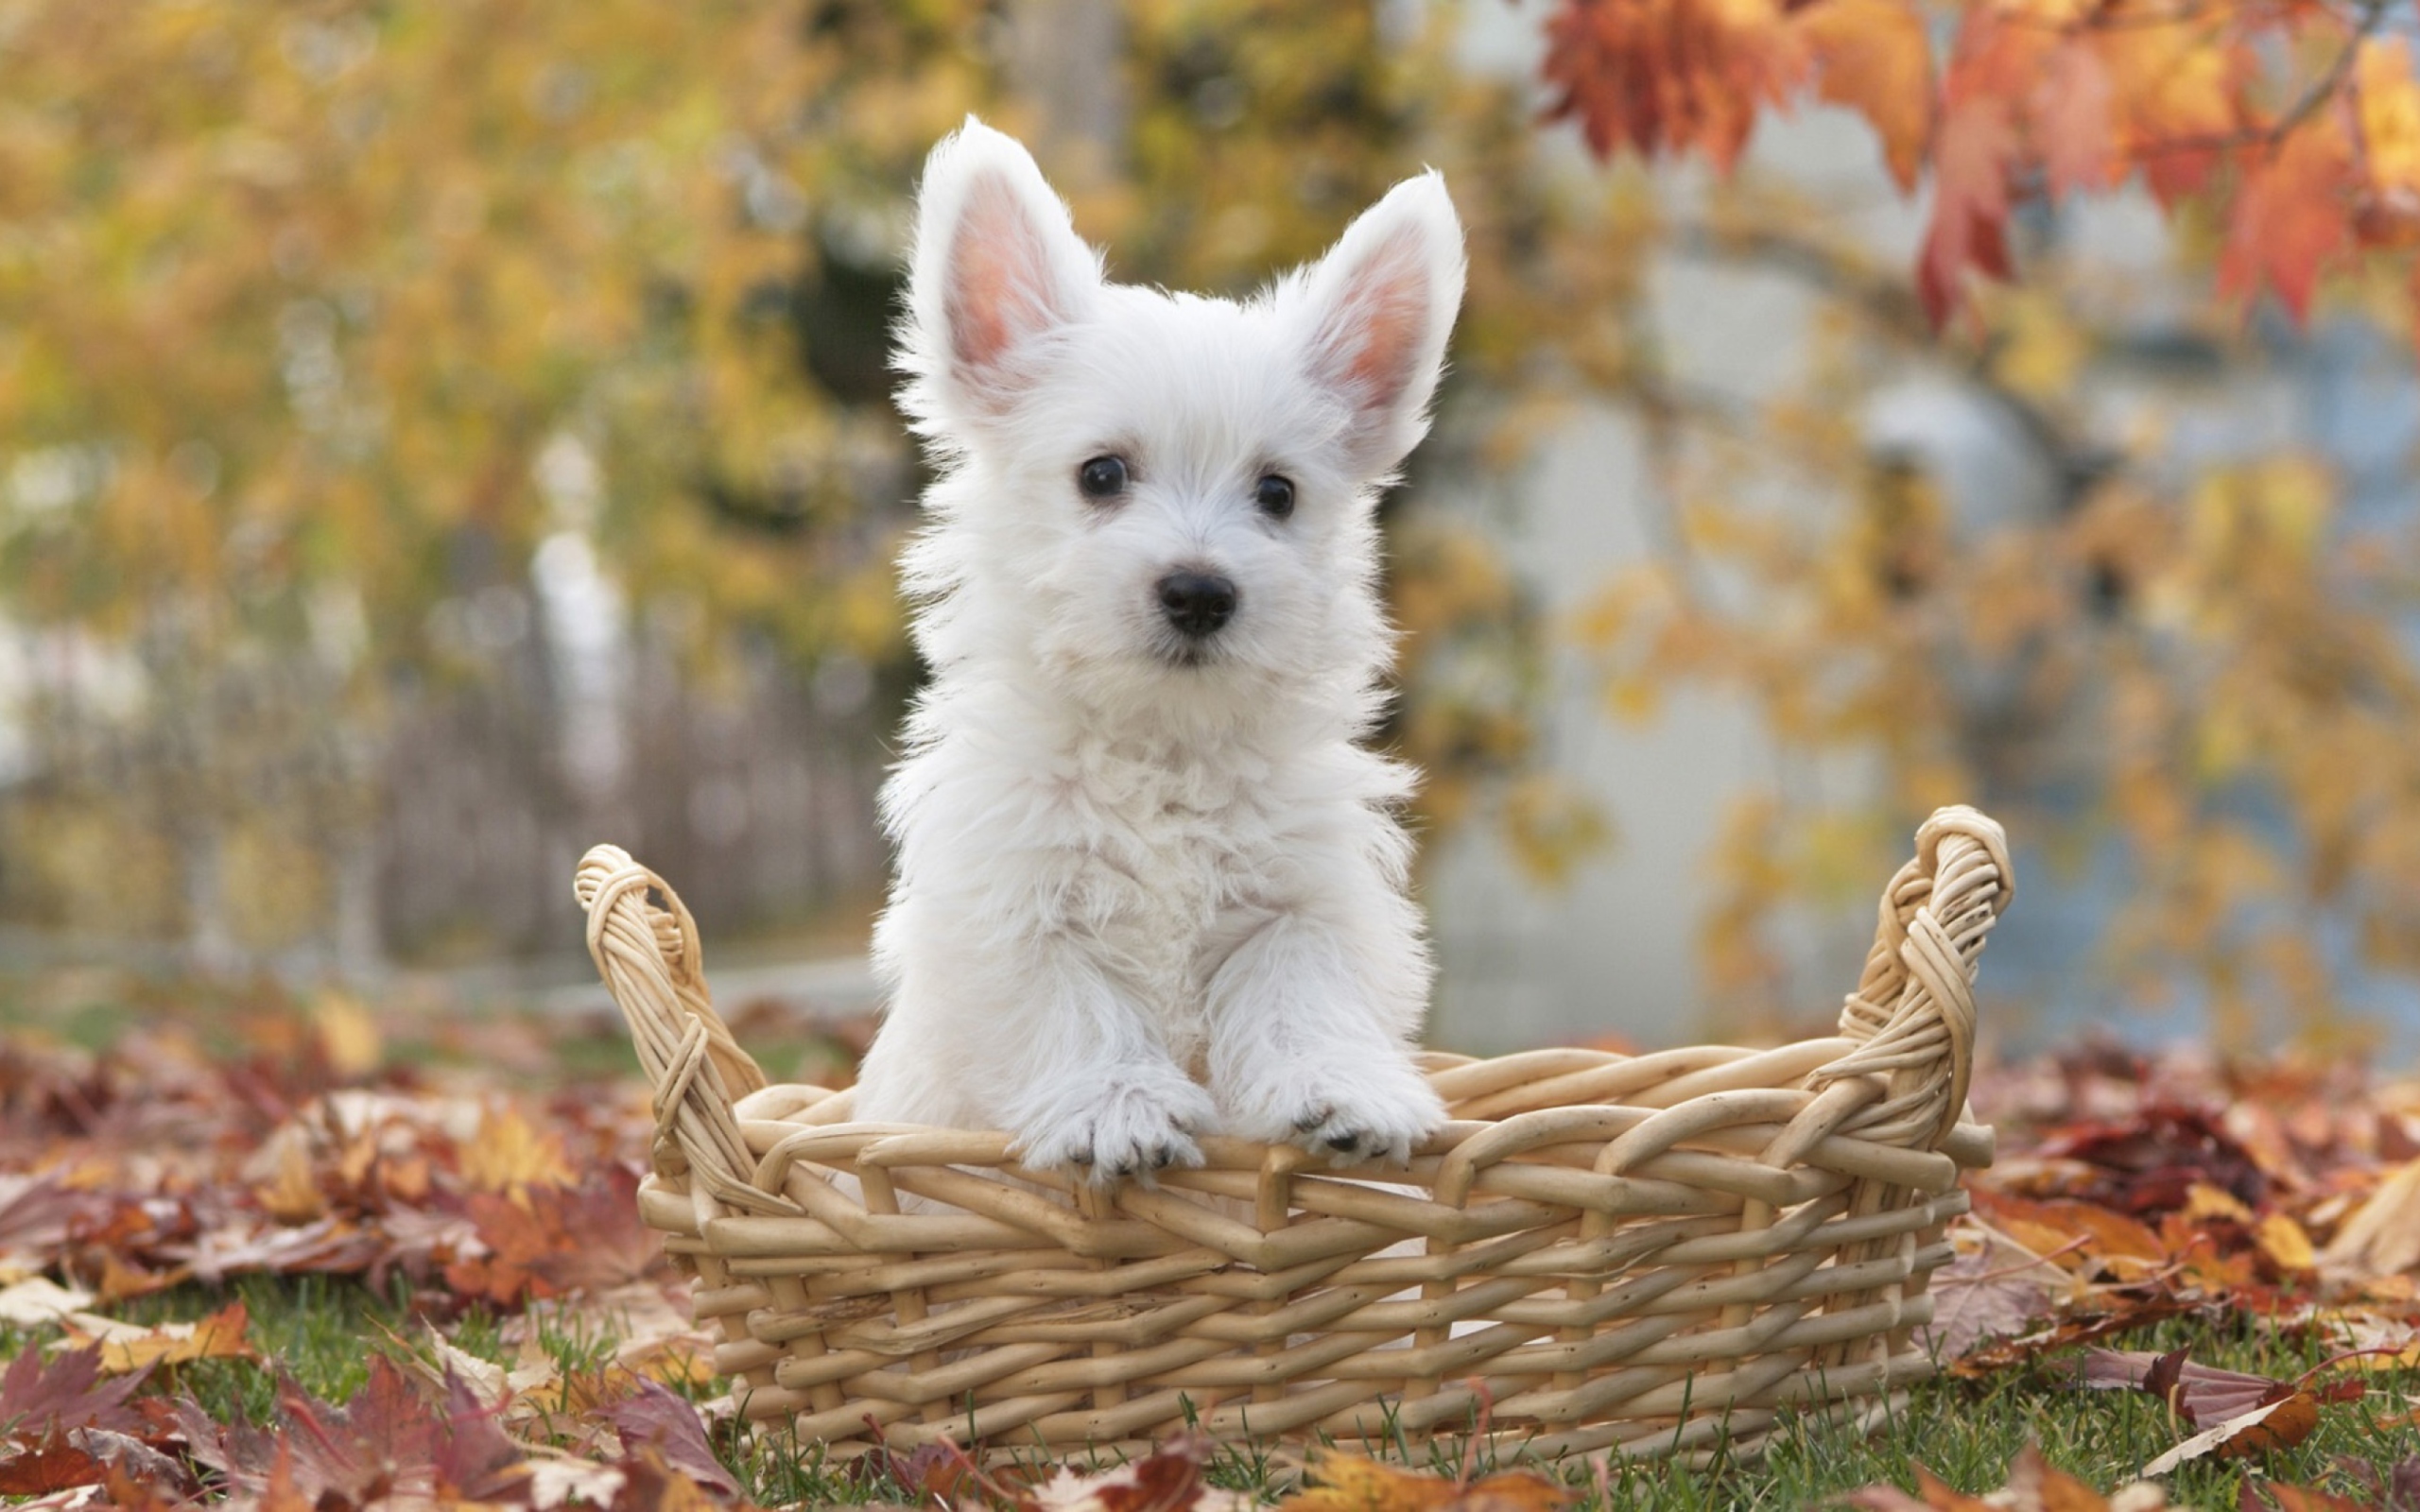 Cute Doggy In Basket wallpaper 2560x1600